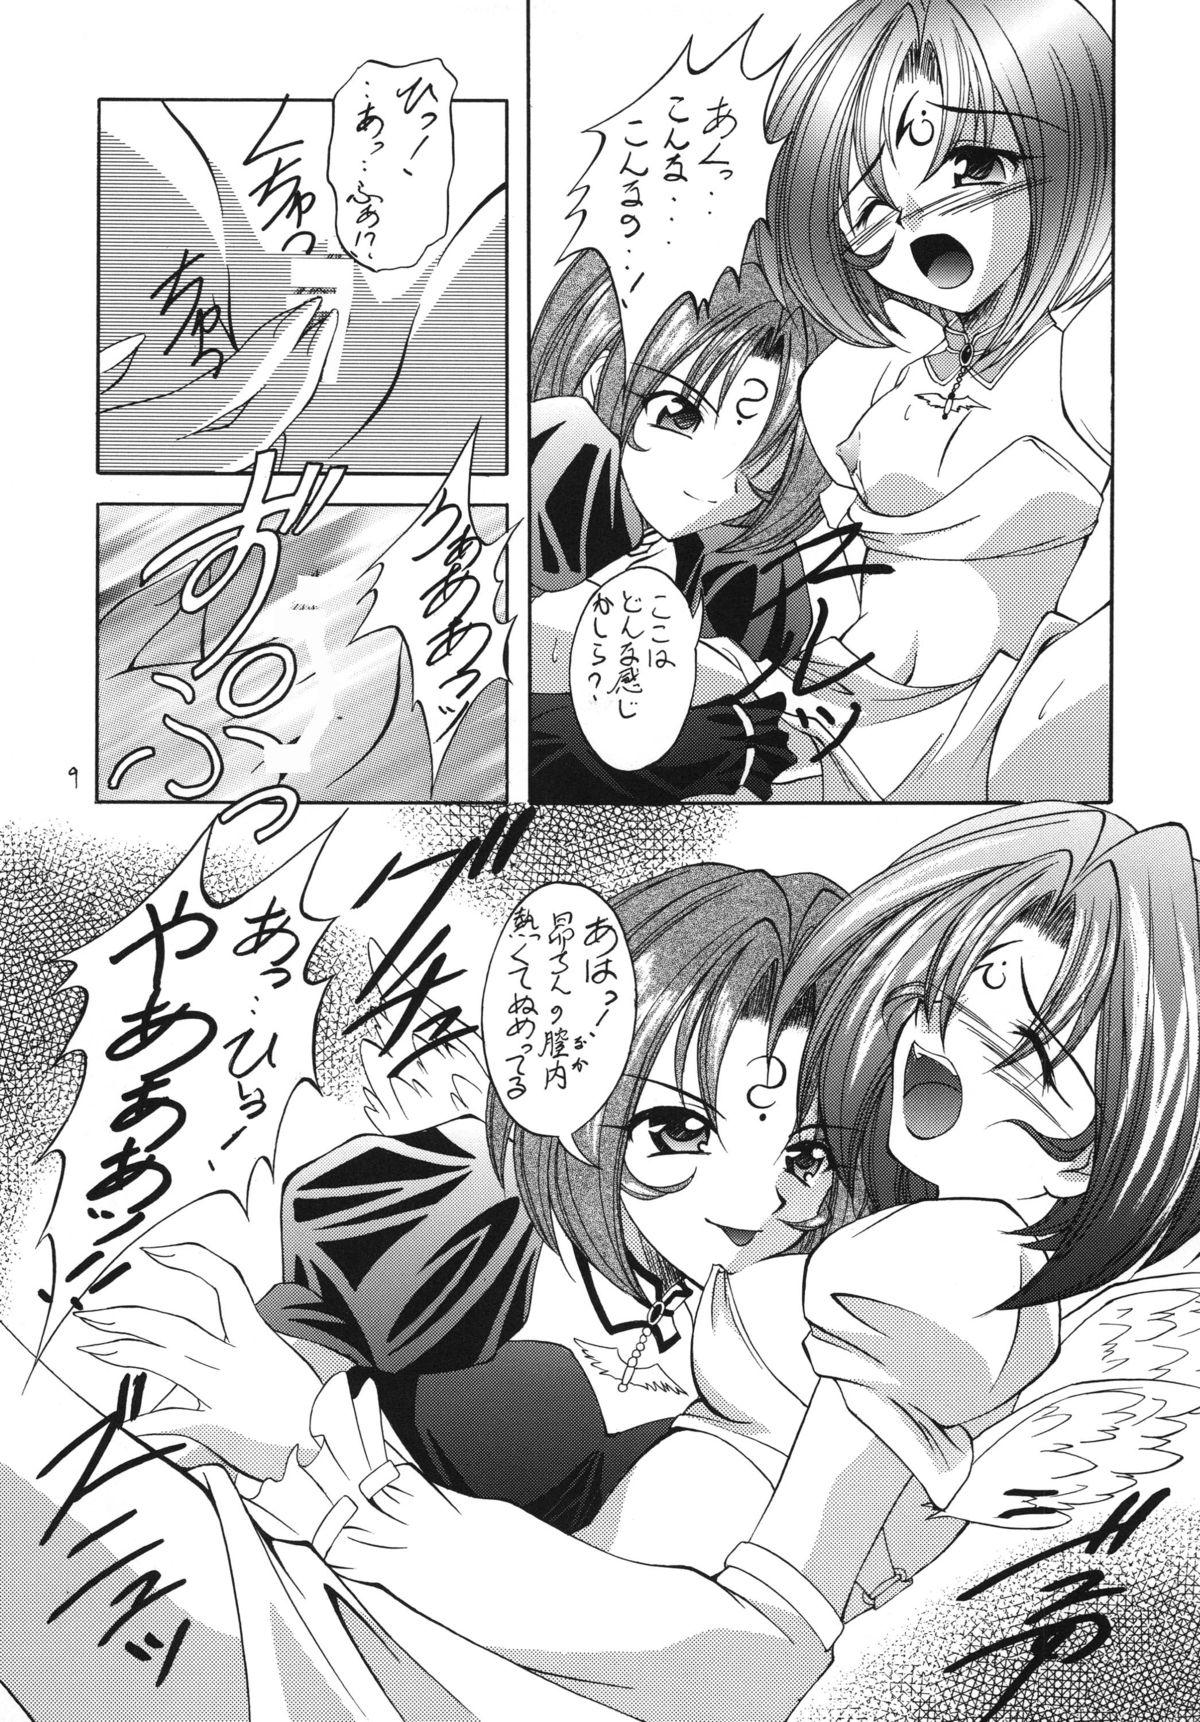 Stripping Kyoei to Haitoku - .hacksign Pendeja - Page 9